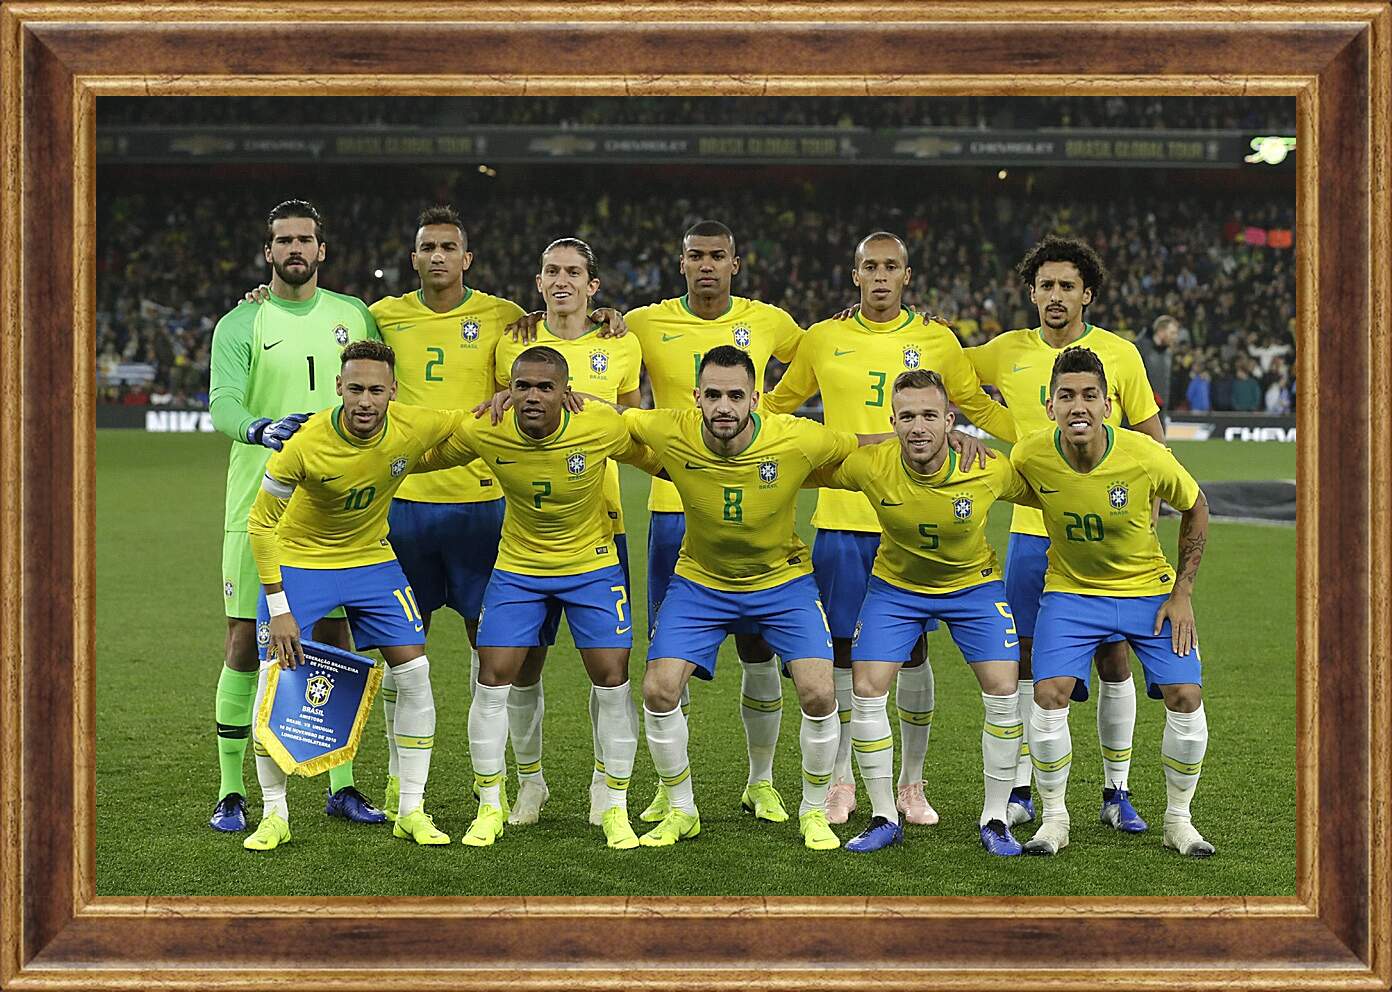 Картина в раме - Фото перед матчем сборной Бразилии по футболу